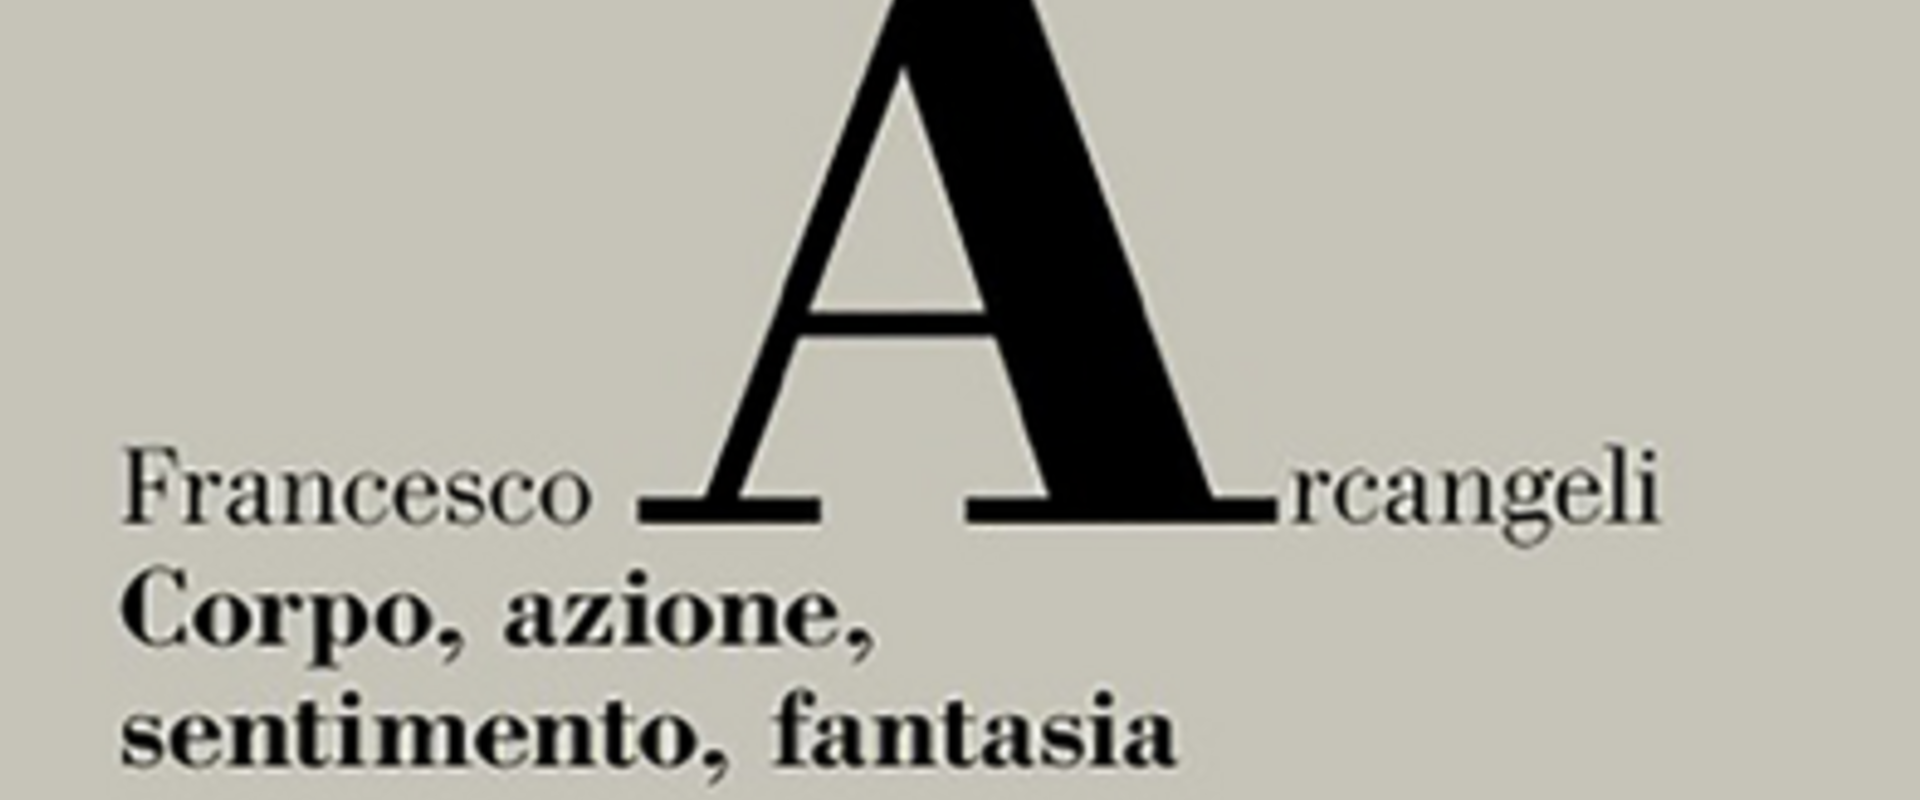 Francesco Arcangeli in cattedra – corpo, azione, sentimento, fantasia